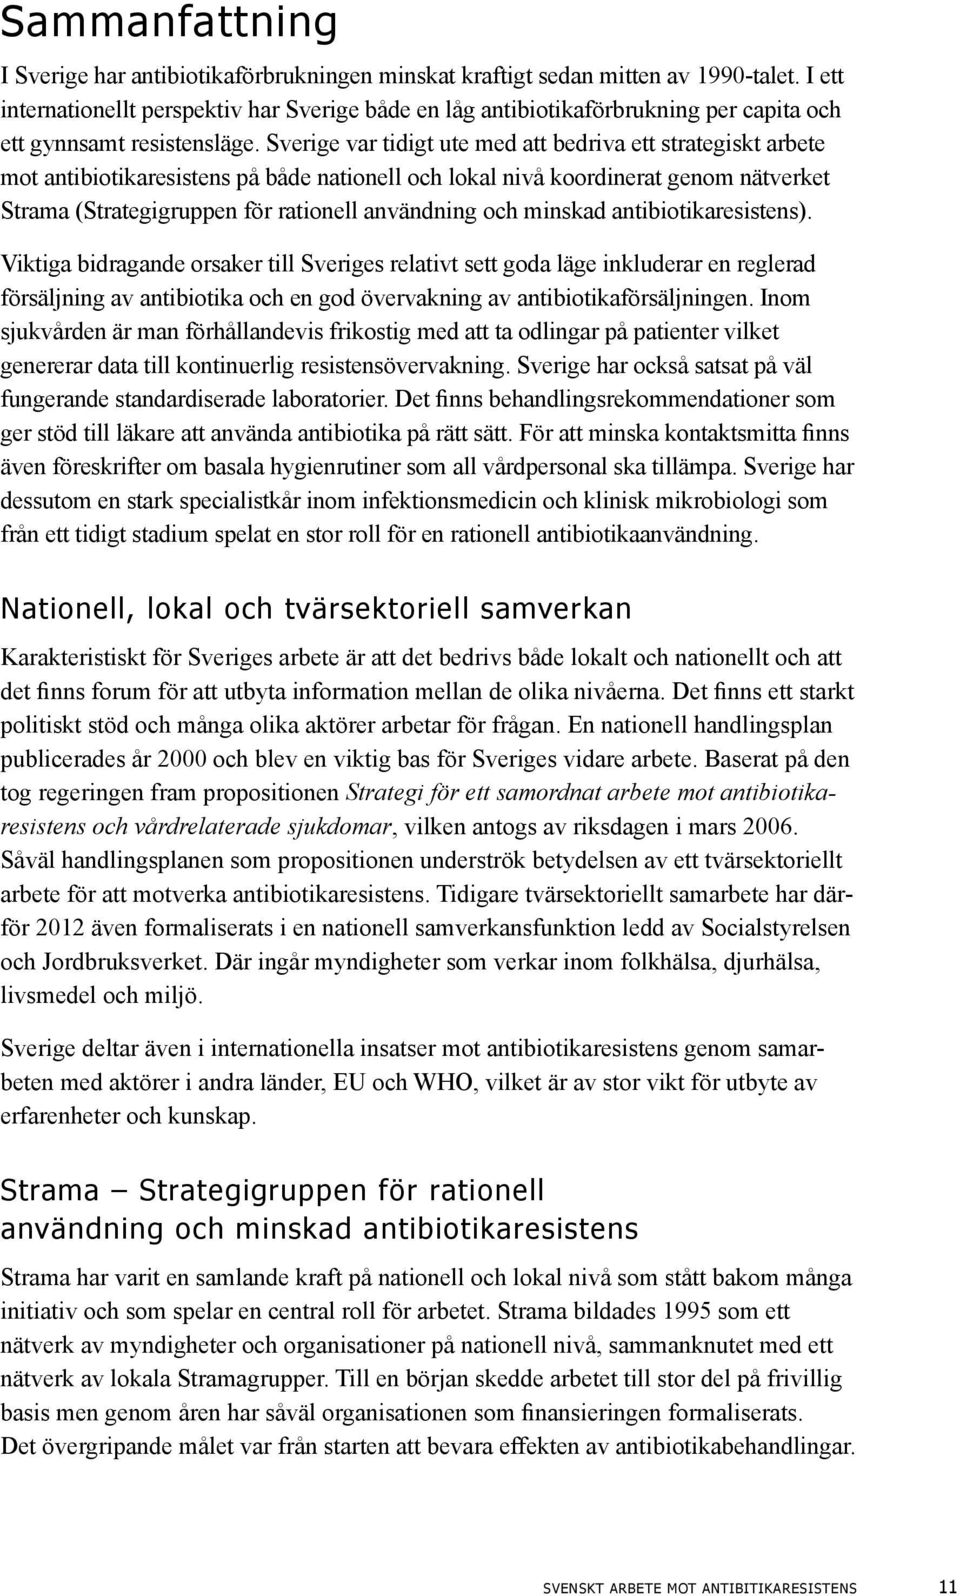 Sverige var tidigt ute med att bedriva ett strategiskt arbete mot antibiotikaresistens på både nationell och lokal nivå koordinerat genom nätverket Strama (Strategigruppen för rationell användning